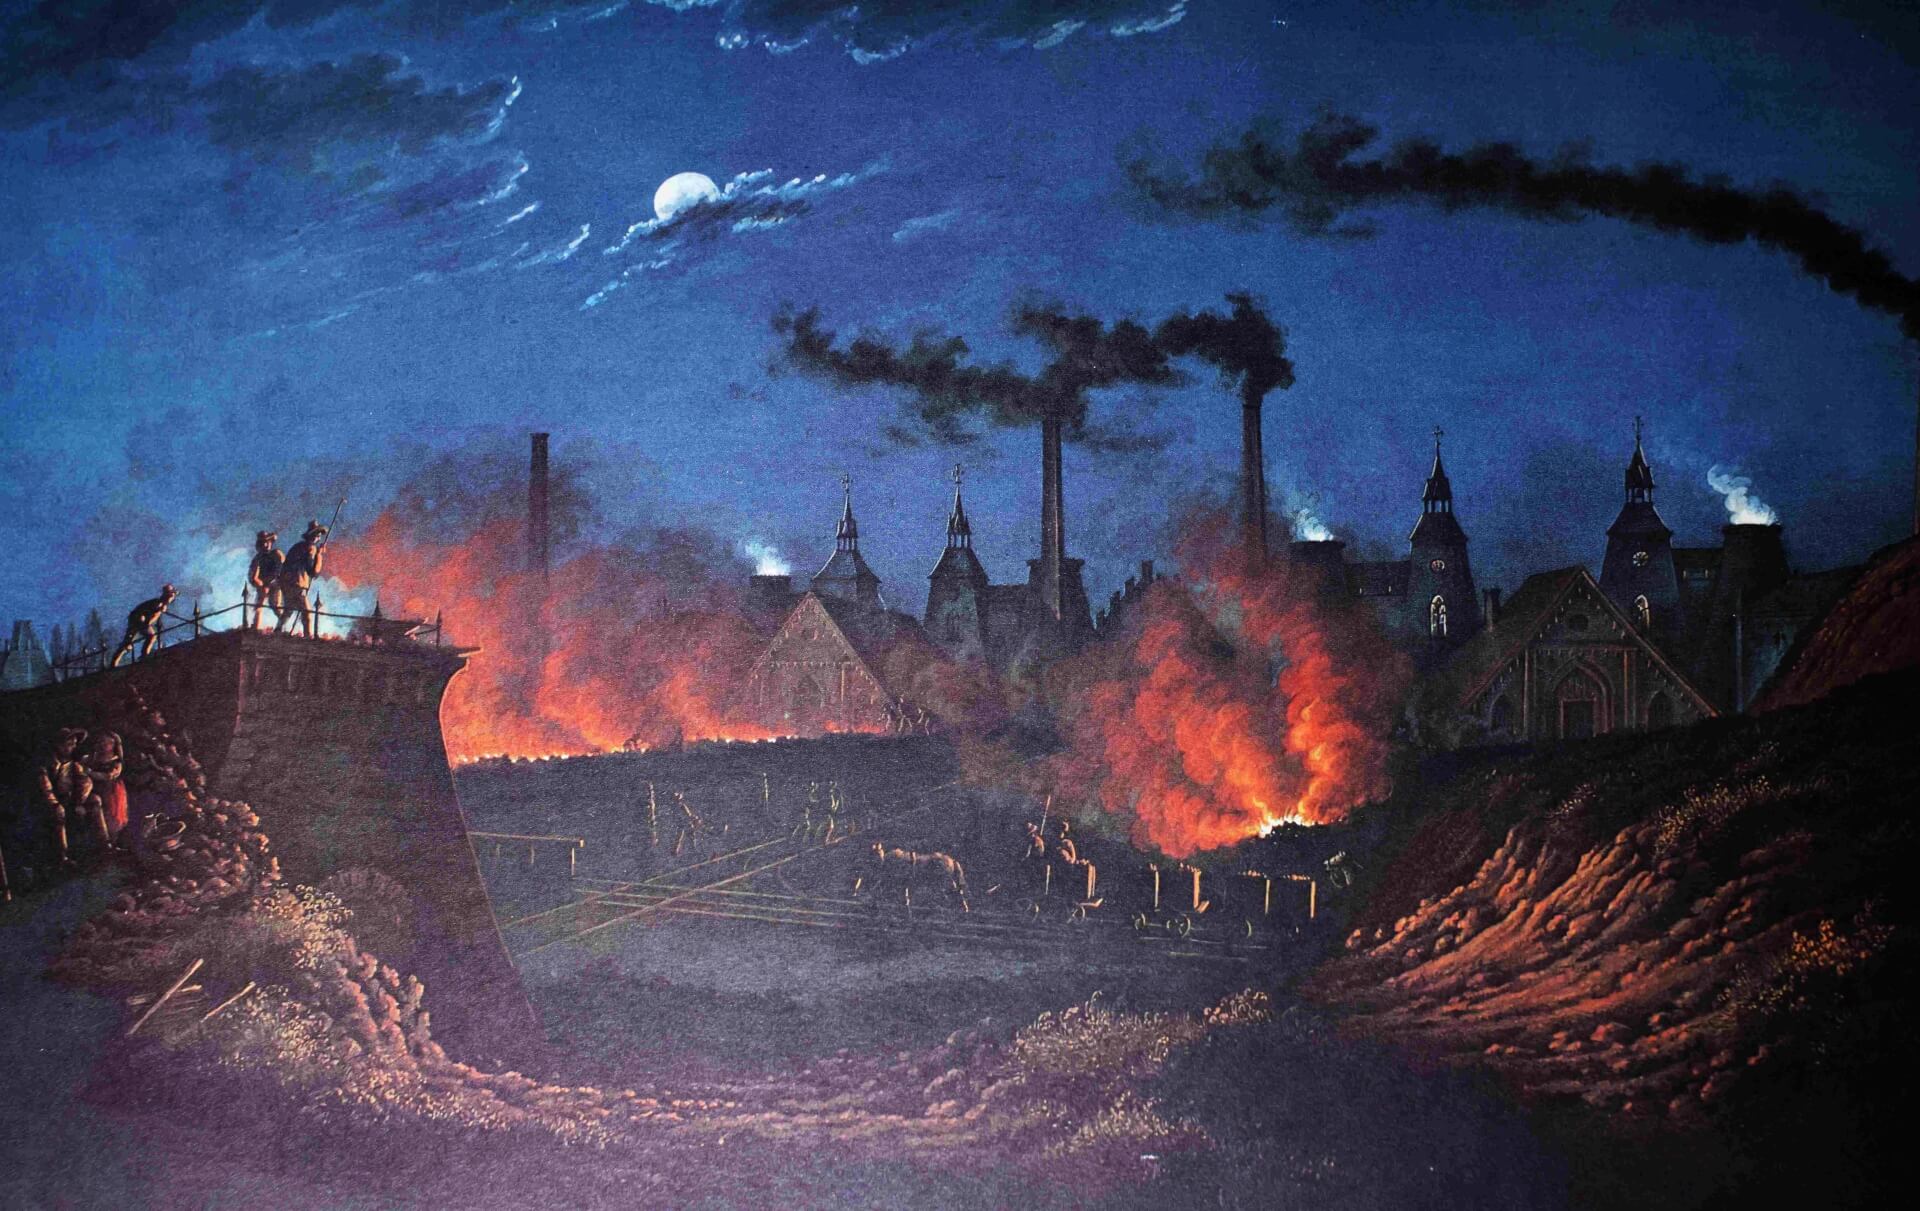 Górnośląskie przemysłowe inferno (Königshütte na litografii z lat 50. XIX w.)